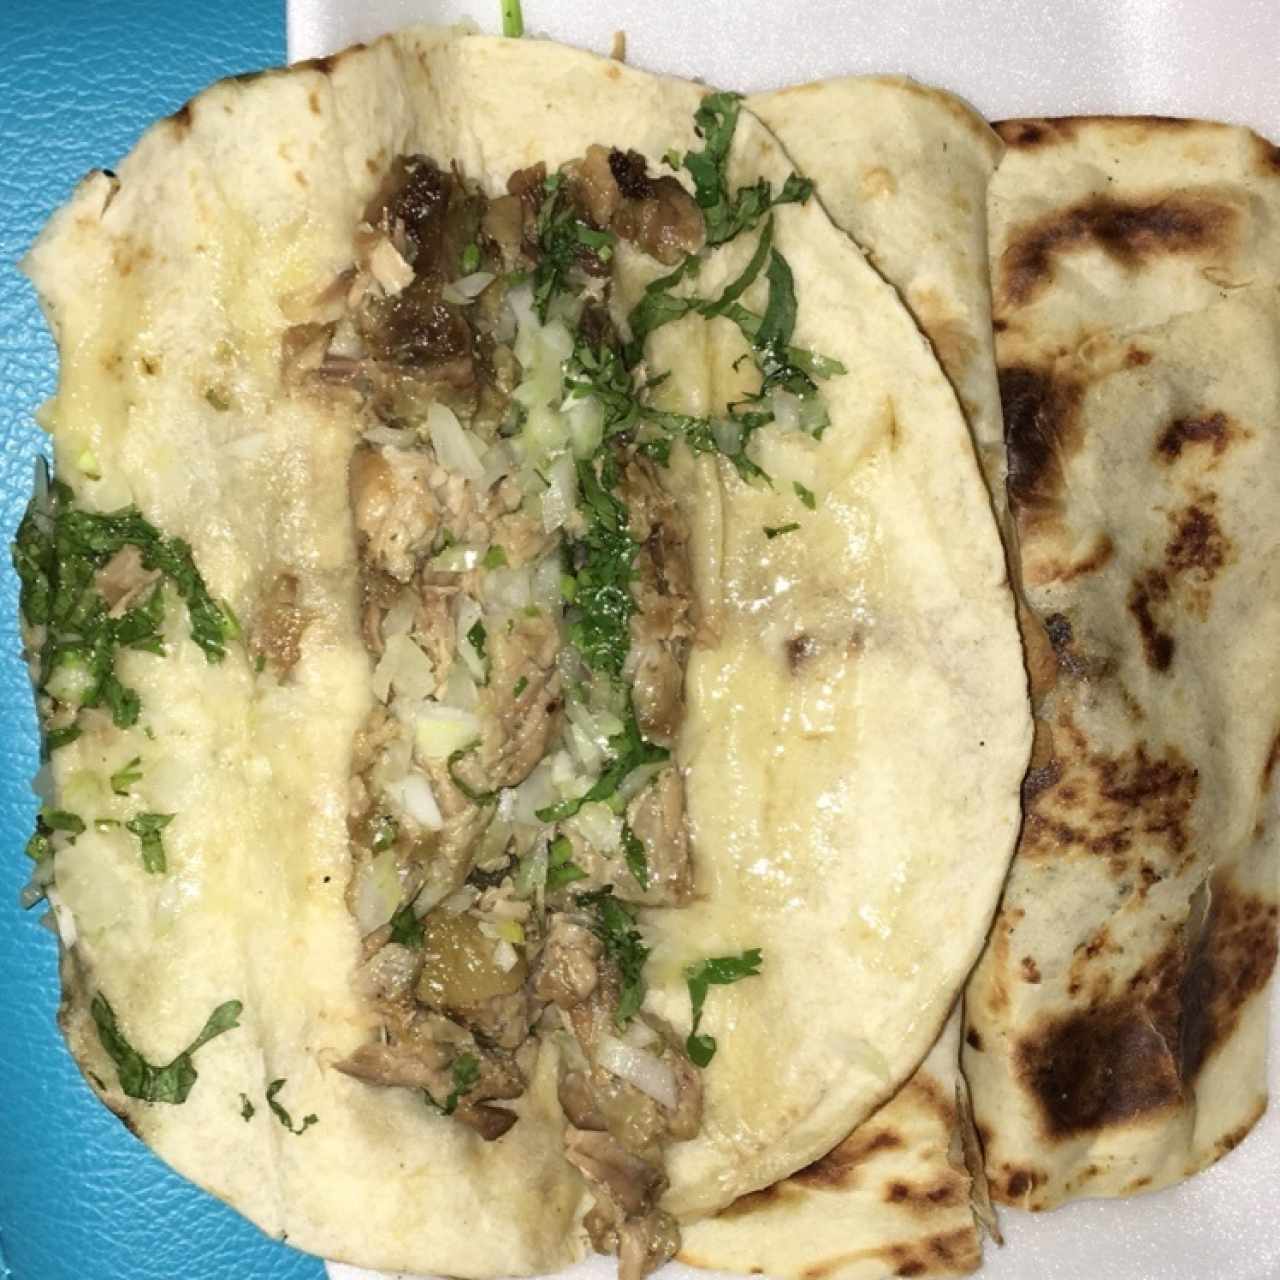 Tacos de Carnitas